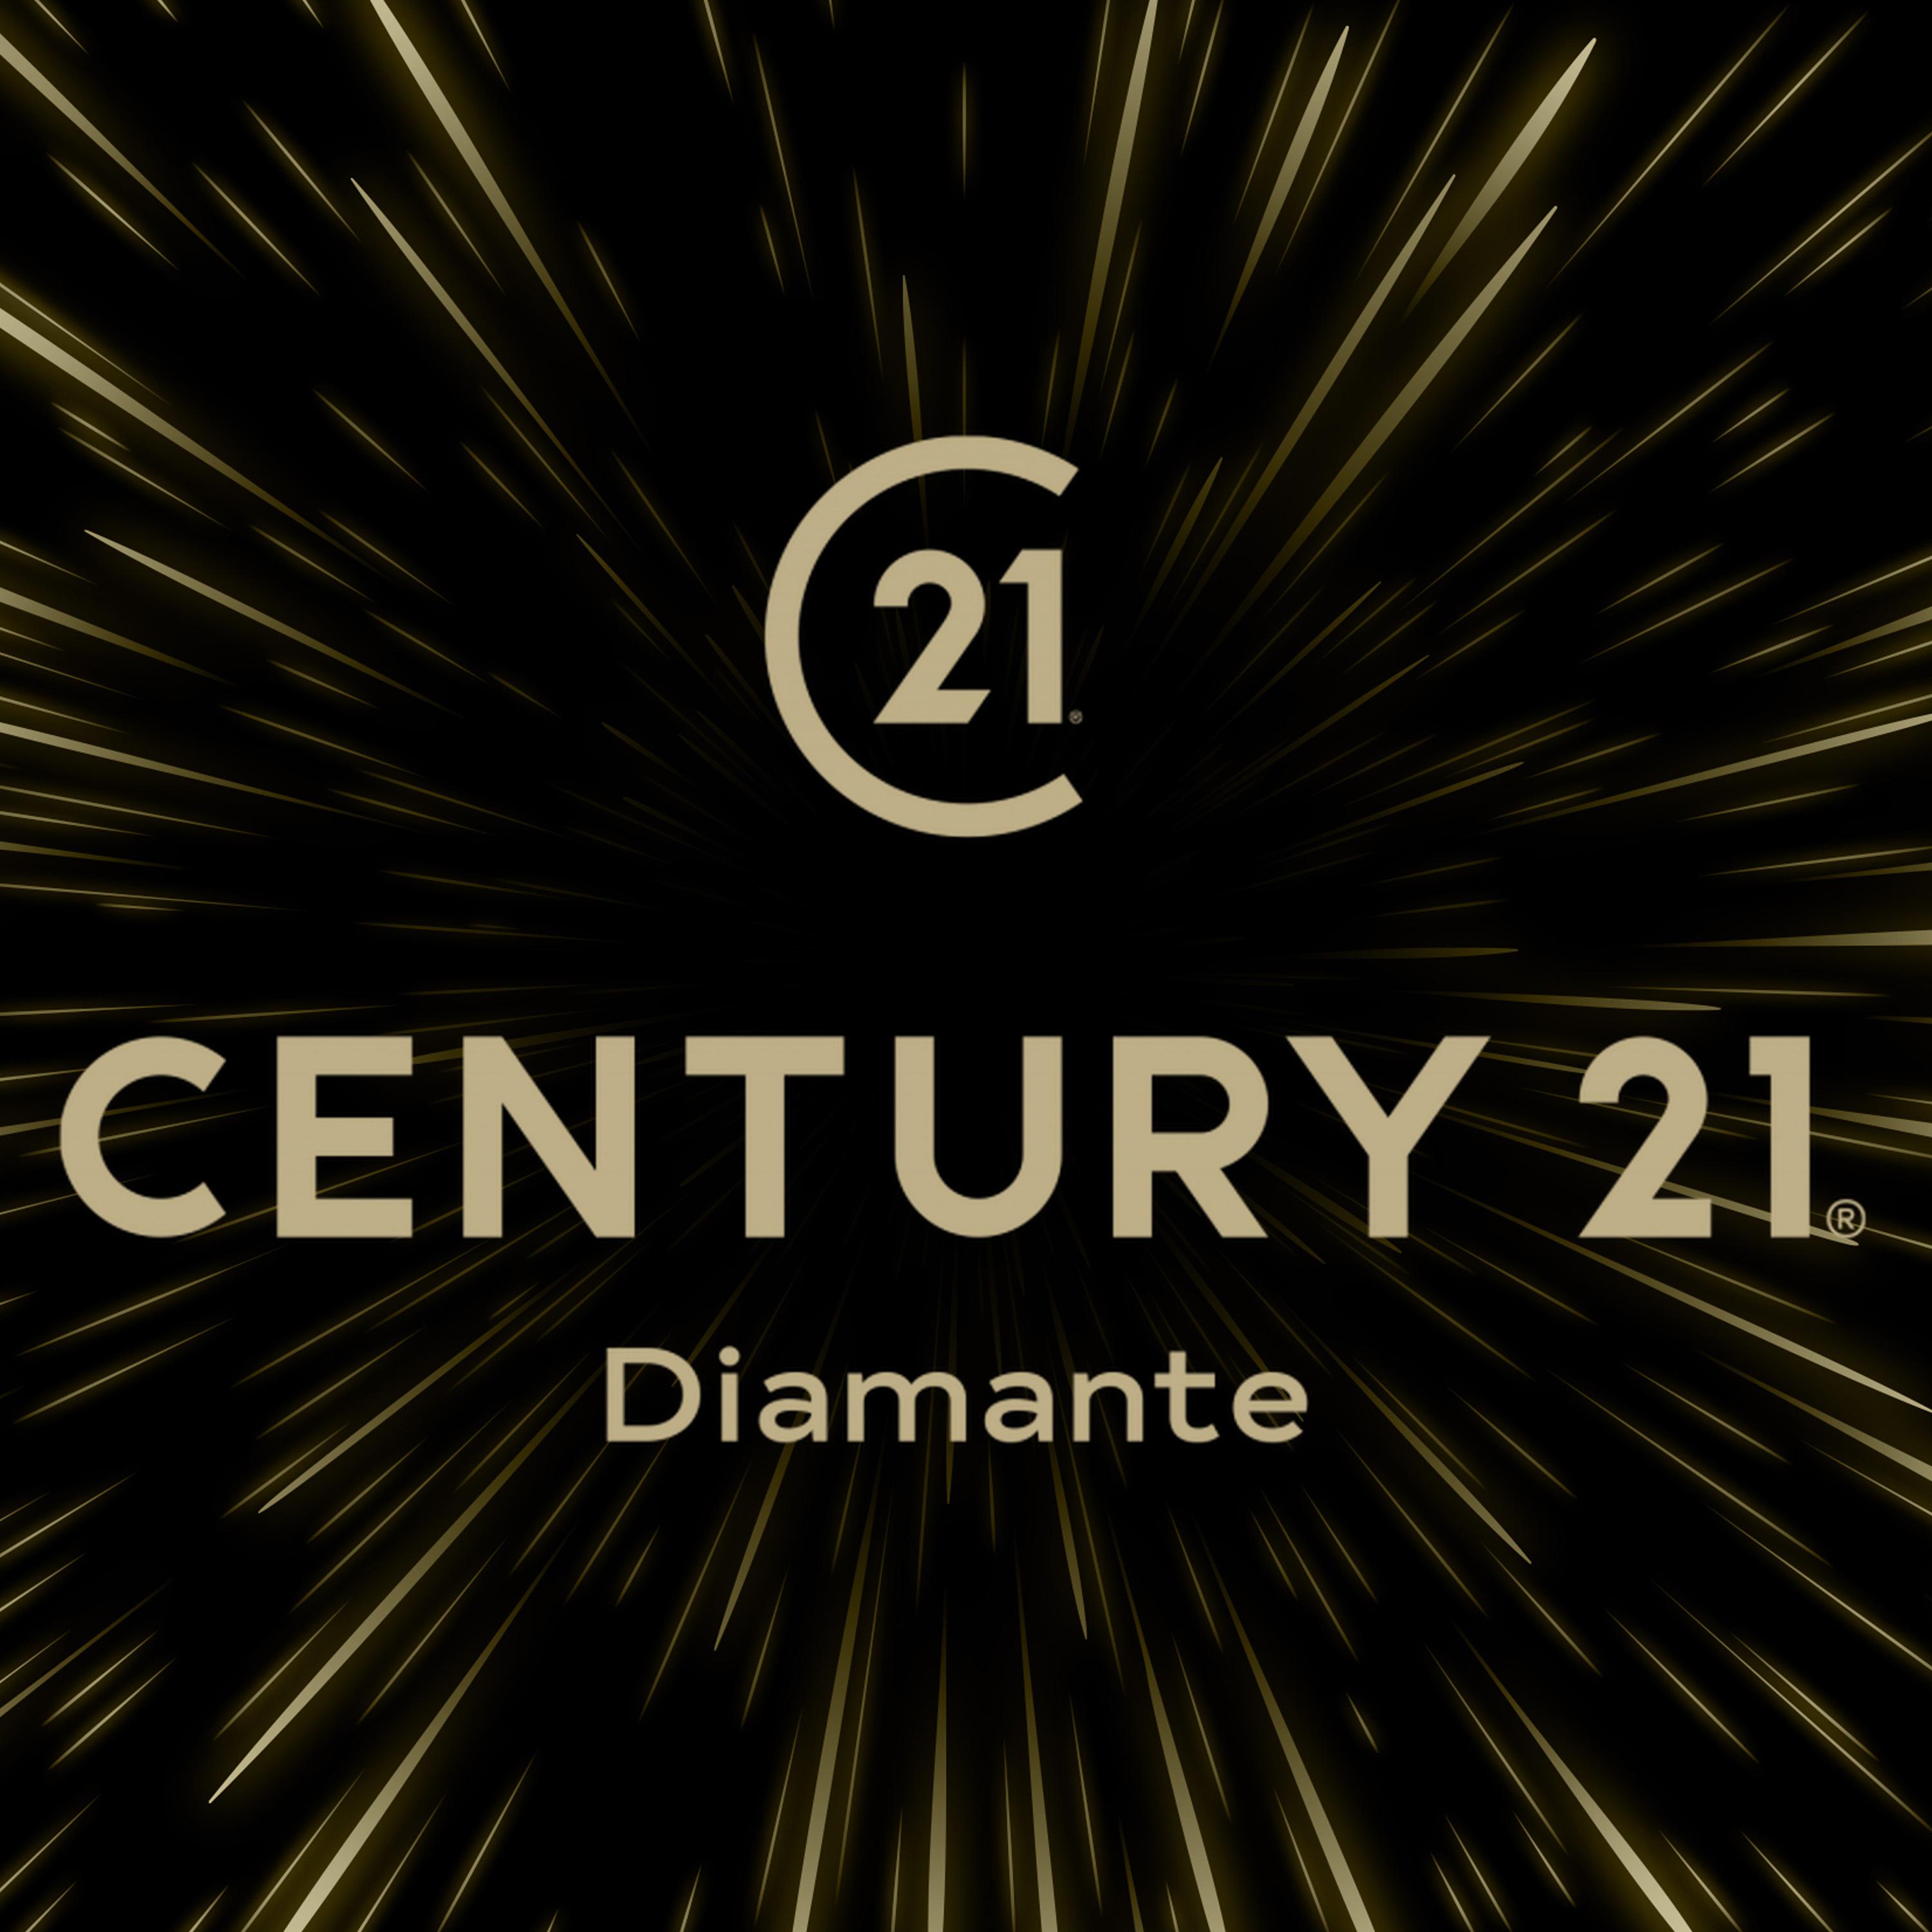 Century 21 Diamante